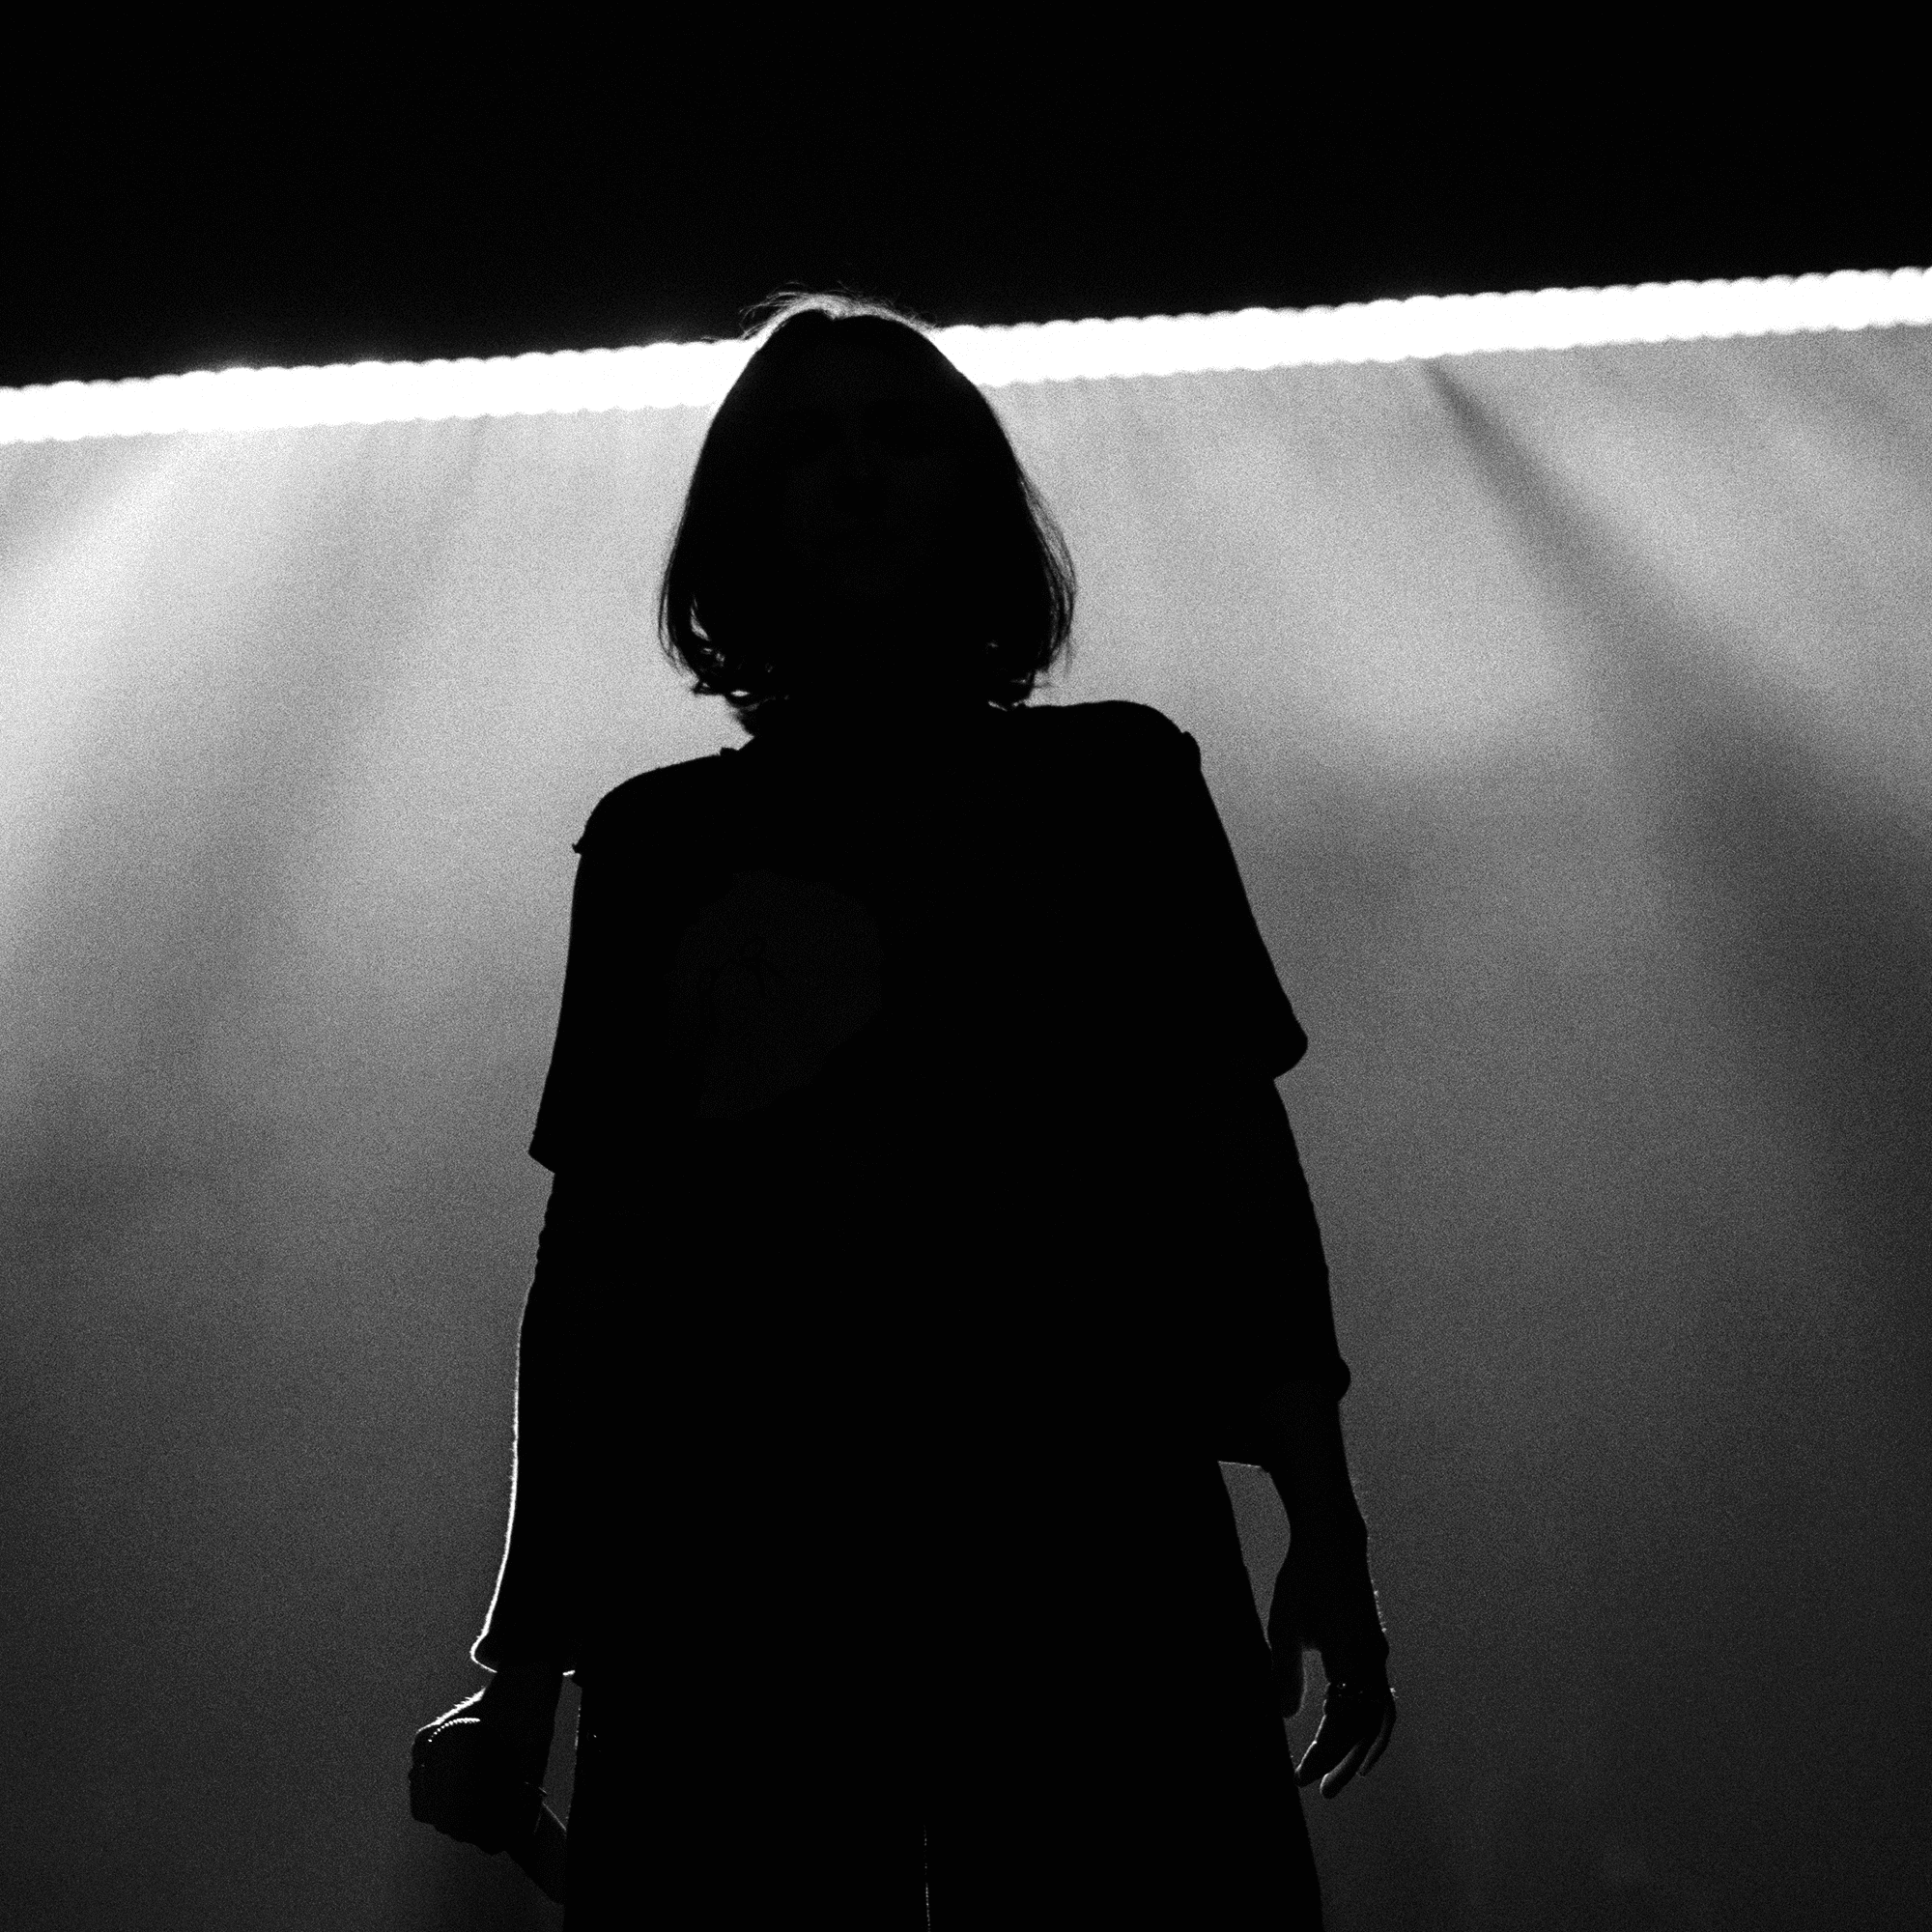 Une photo en noir et blanc montre une silhouette se tenant devant une source de lumière vive, créant des ombres spectaculaires. La lumière est positionnée derrière l’individu, obscurcissant les détails et créant un fort effet de rétroéclairage.